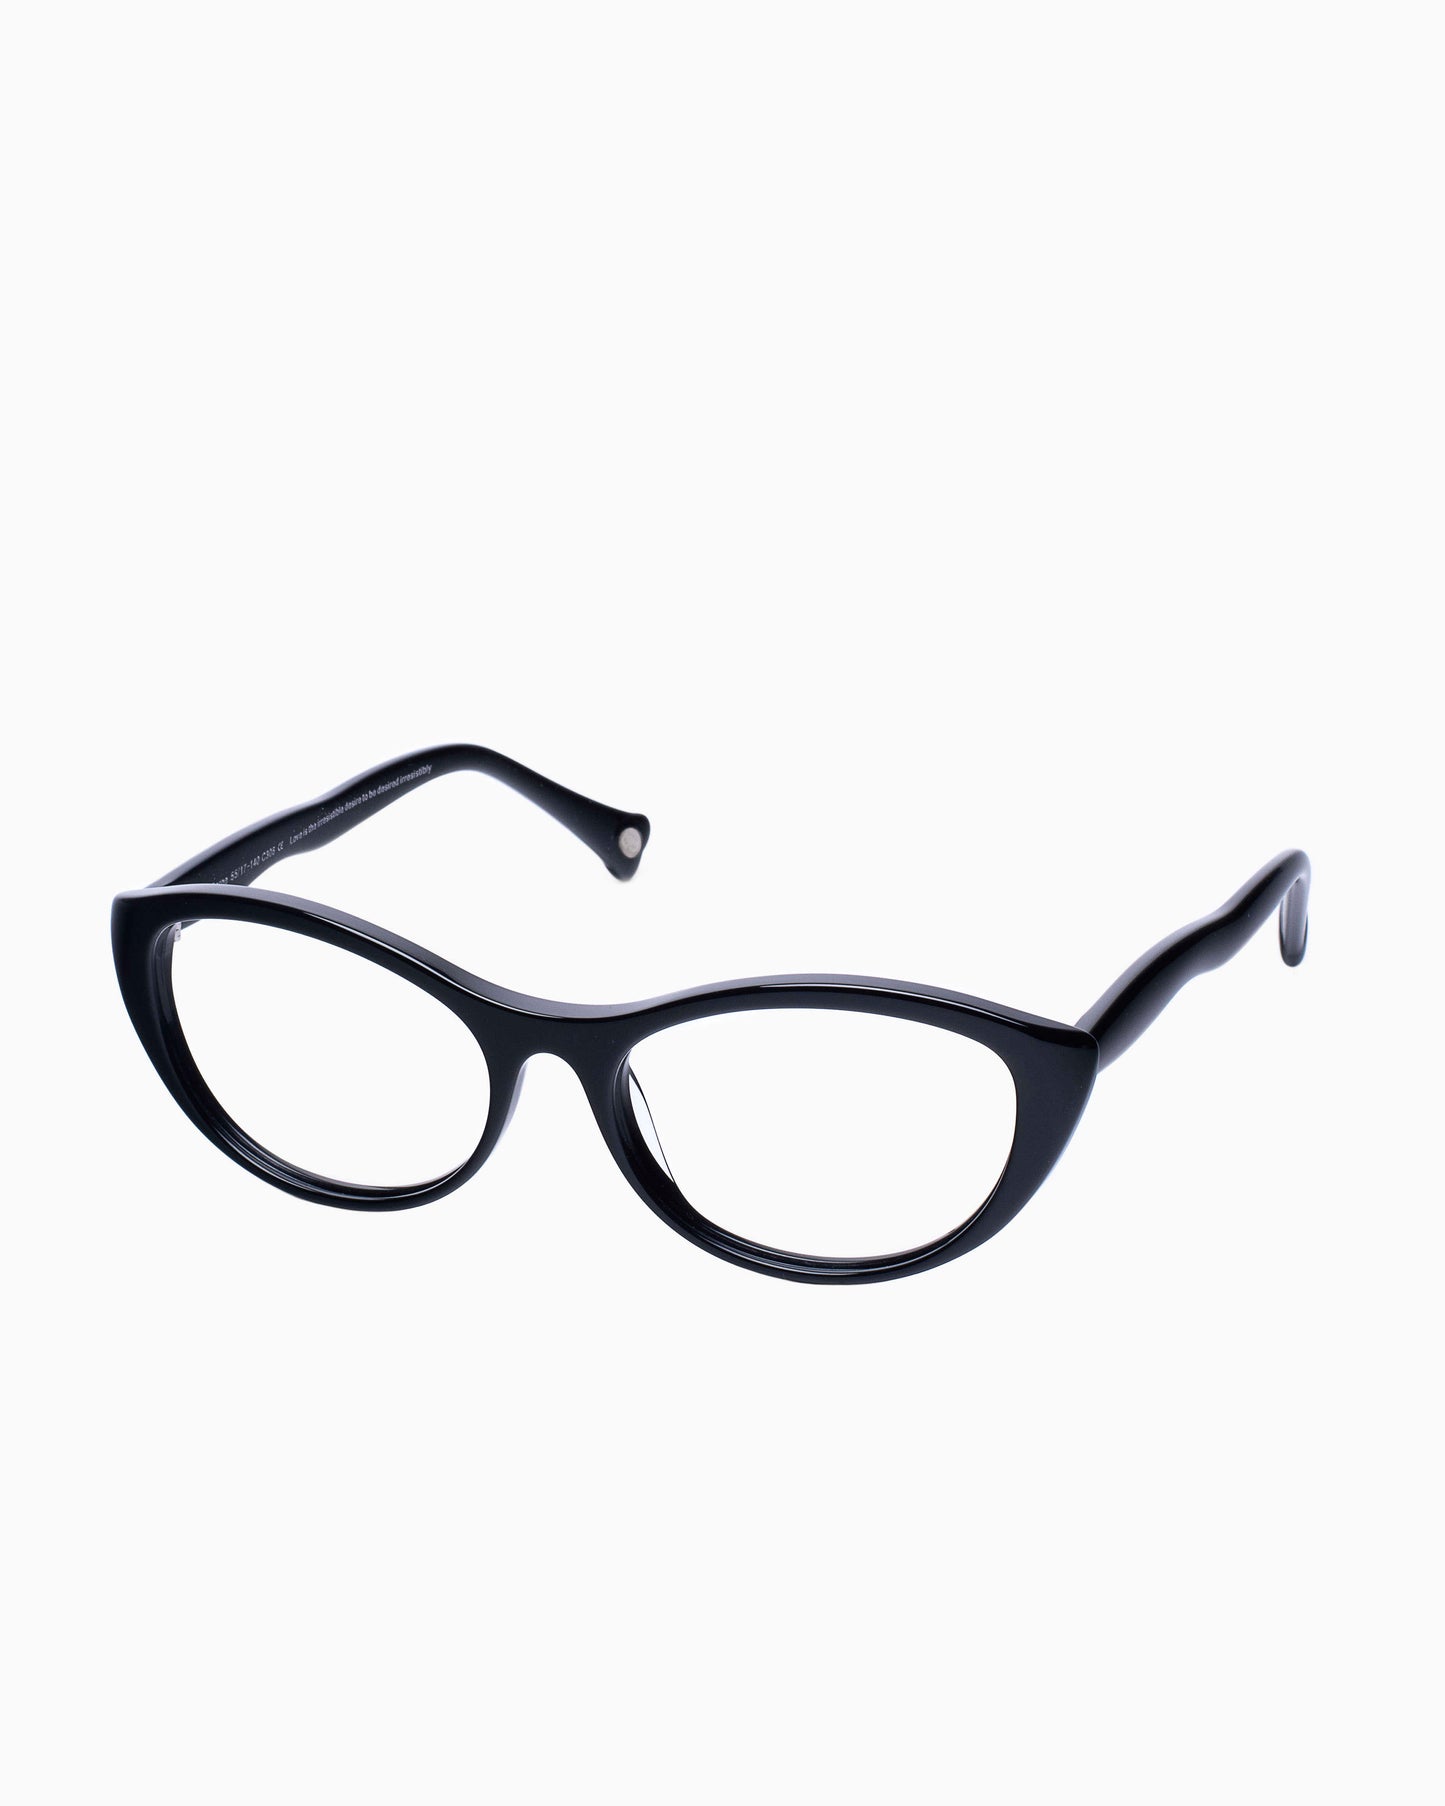 Spectacleeyeworks - Golden - C306 | glasses bar